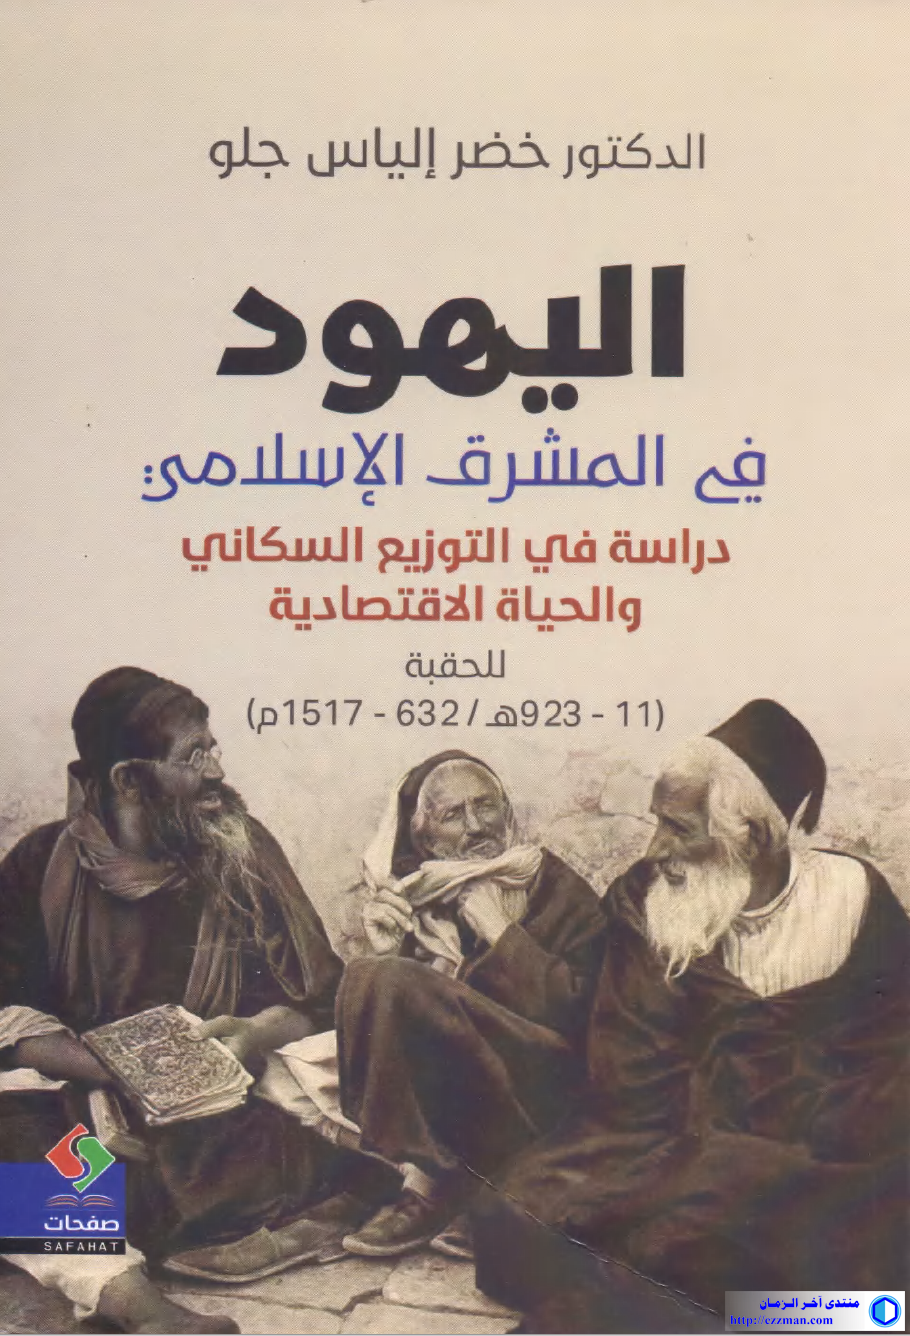 اليهود المشرق الإسلامي 11-933 -1517